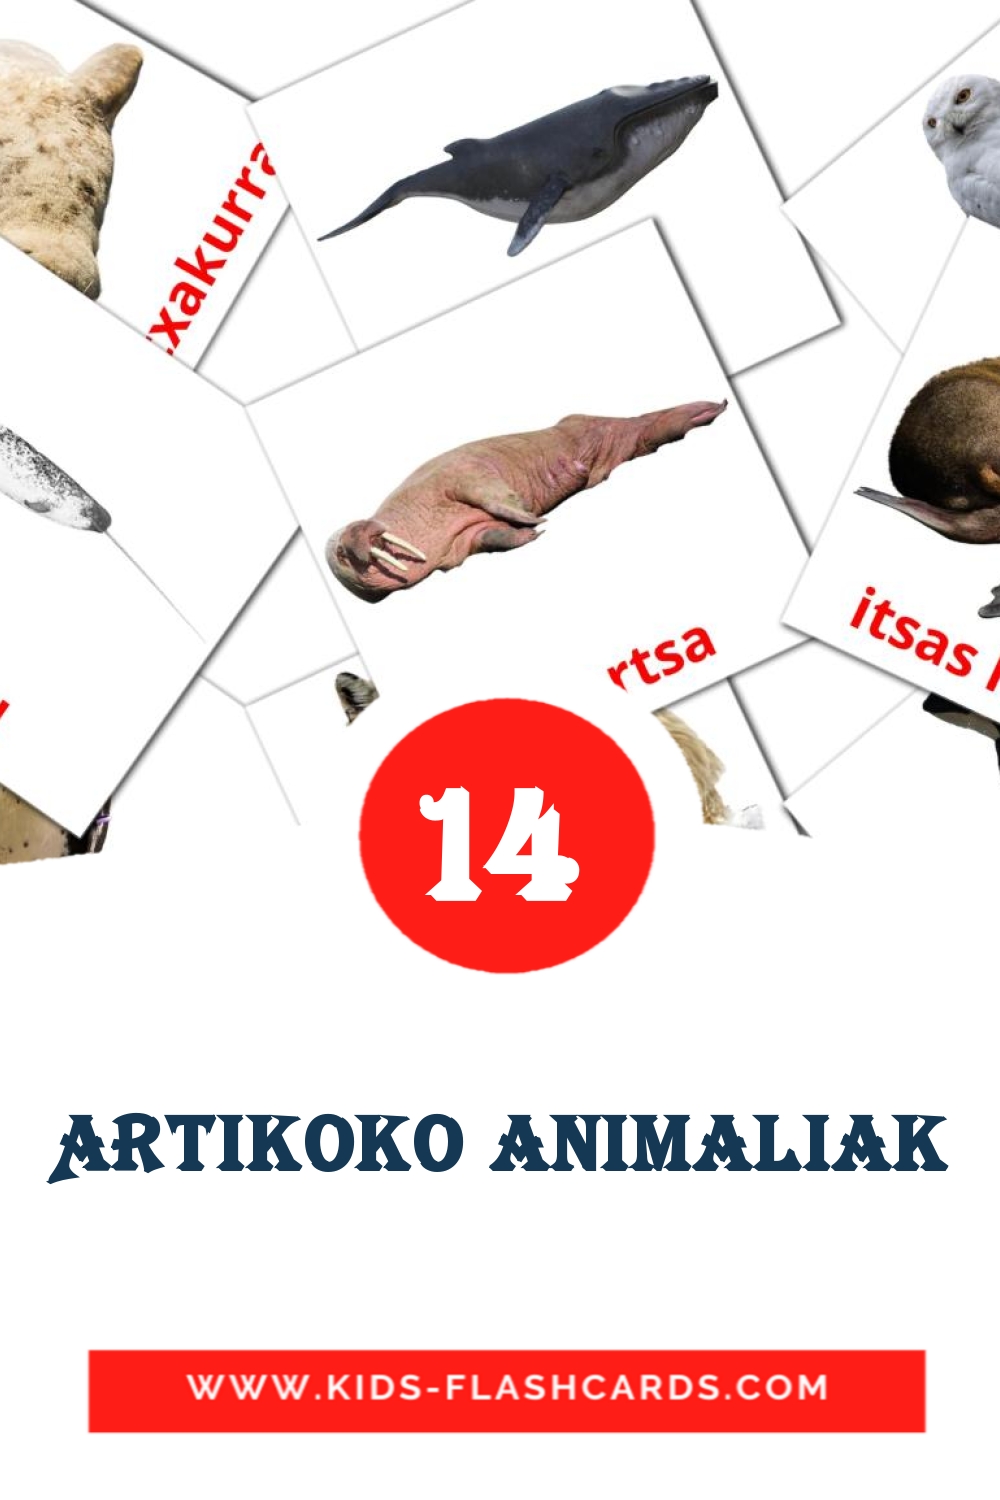 14 tarjetas didacticas de Artikoko animaliak para el jardín de infancia en euskera